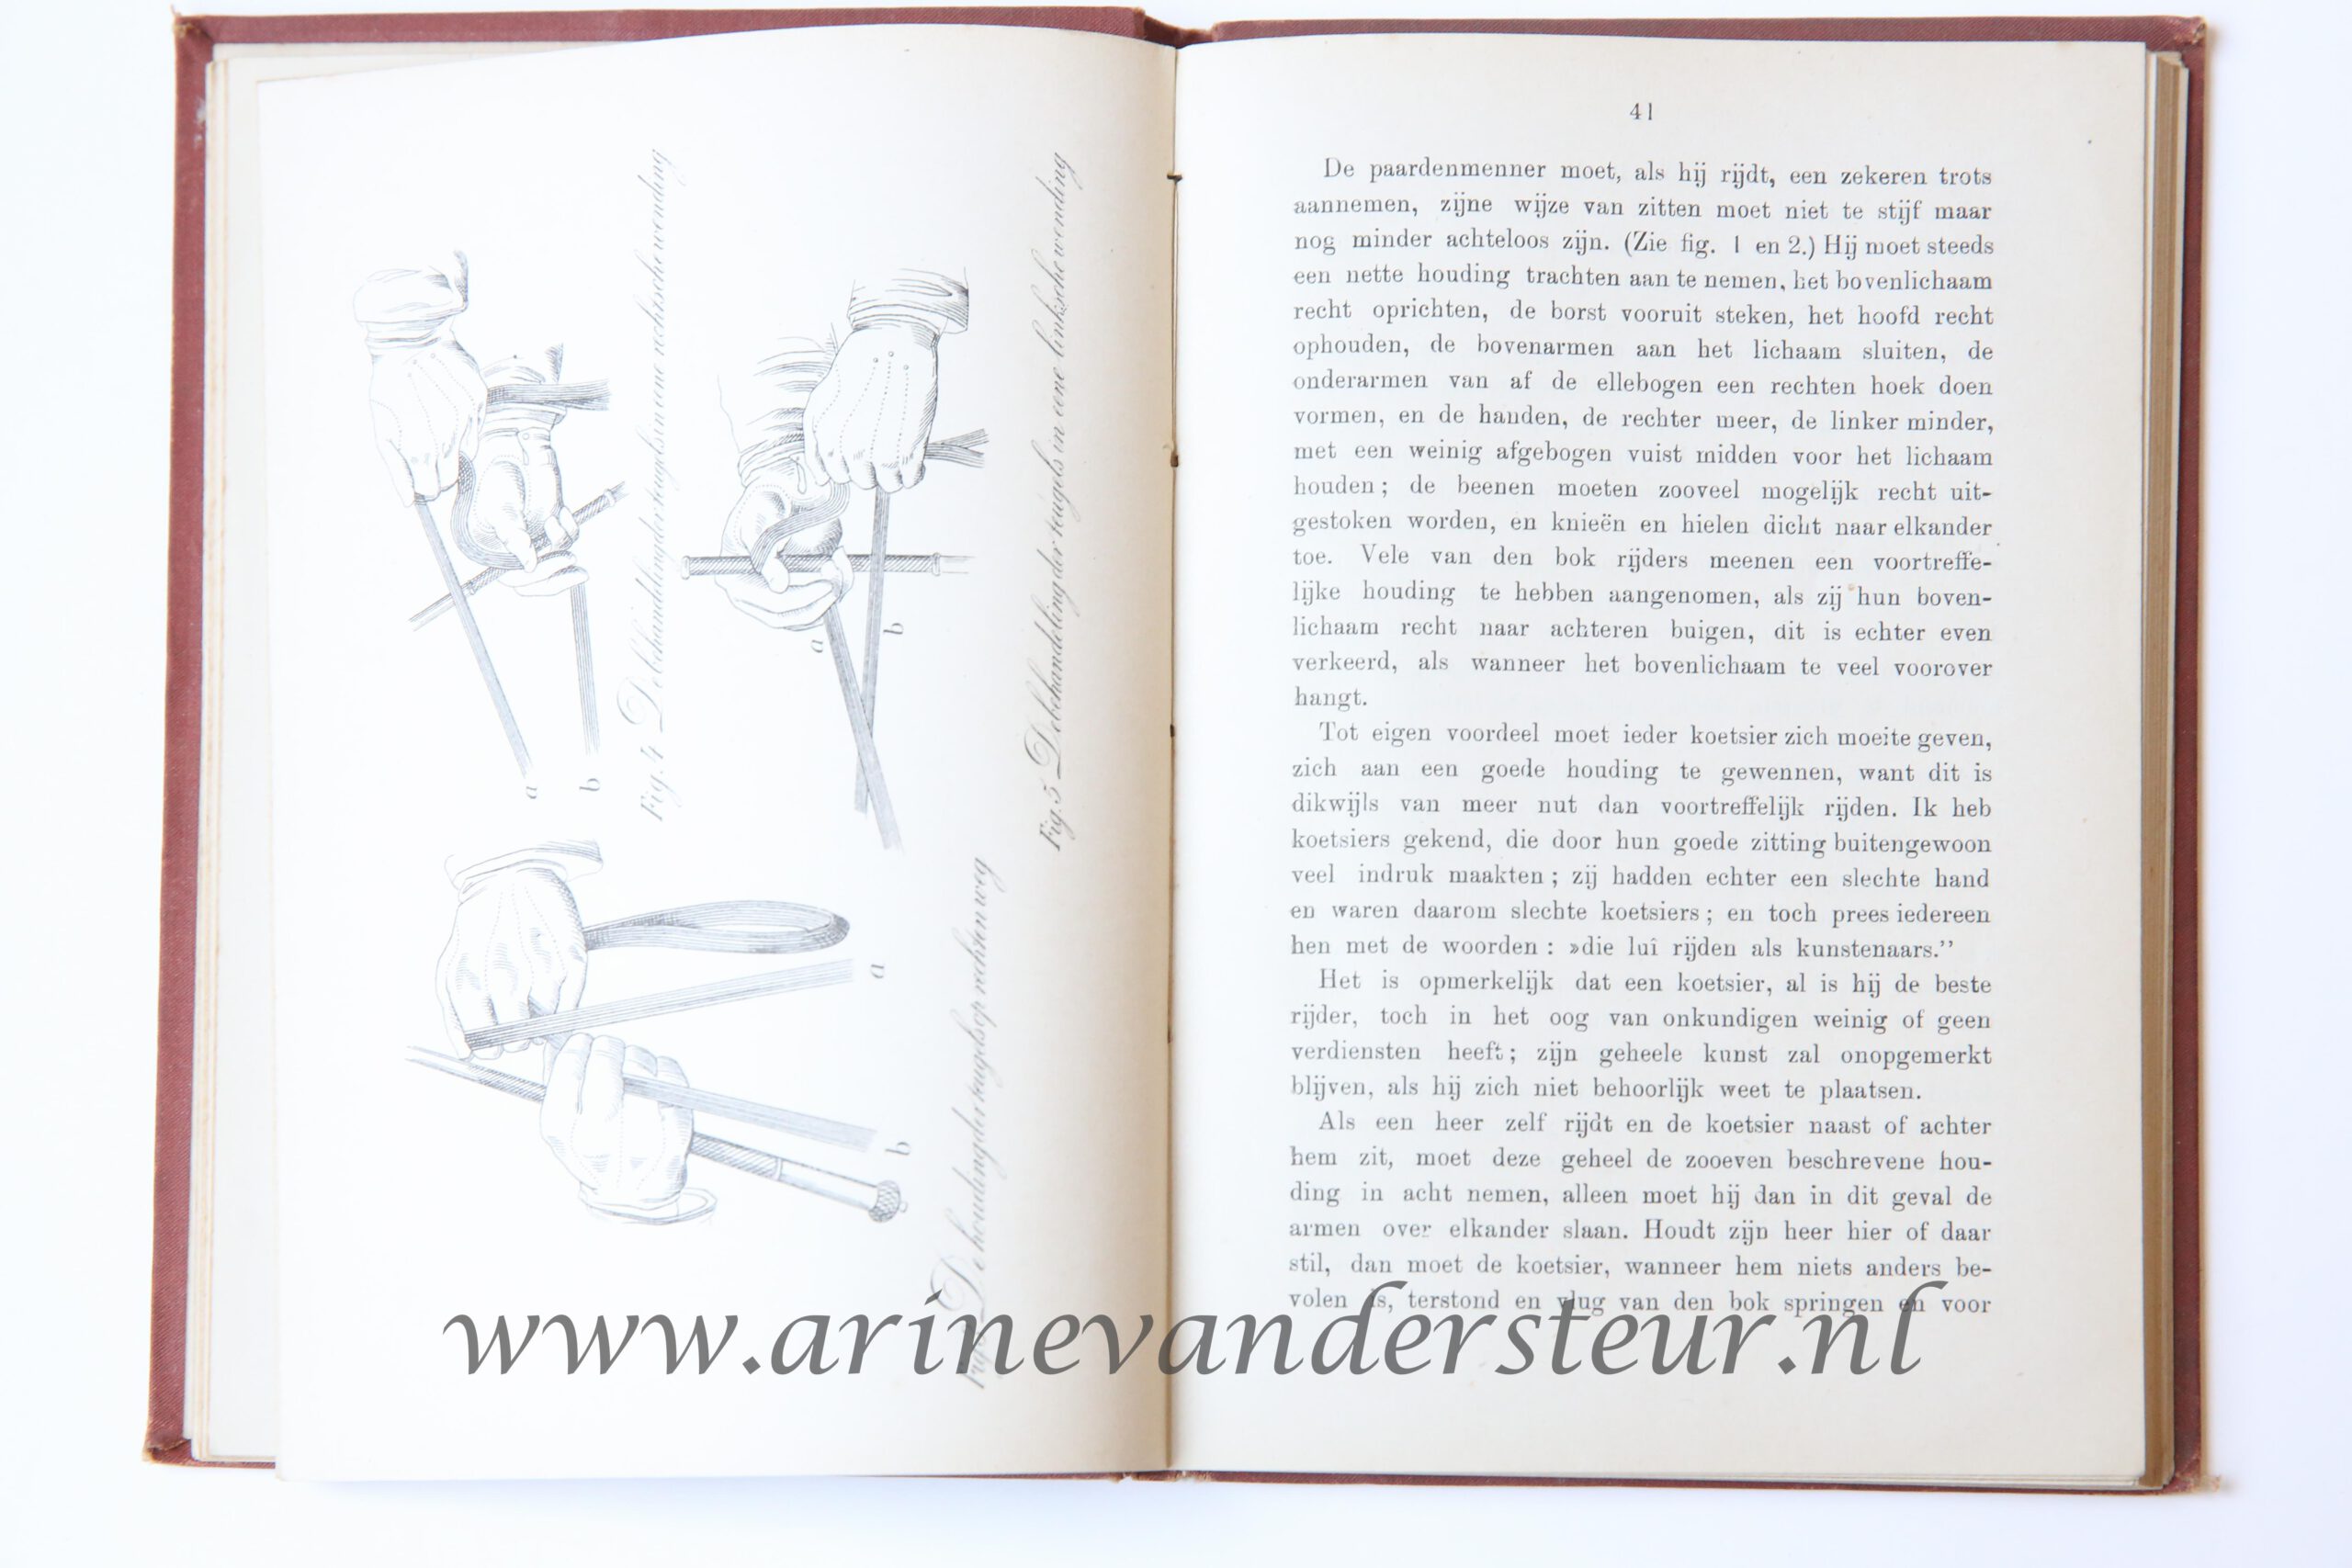 [Antique book, coach men, driver instructions] Het van den bok rijden. Grondig onderricht voor koetsiers en houders van equipage. Zwolle, v. Hoogstraten & Gorter, 1873.